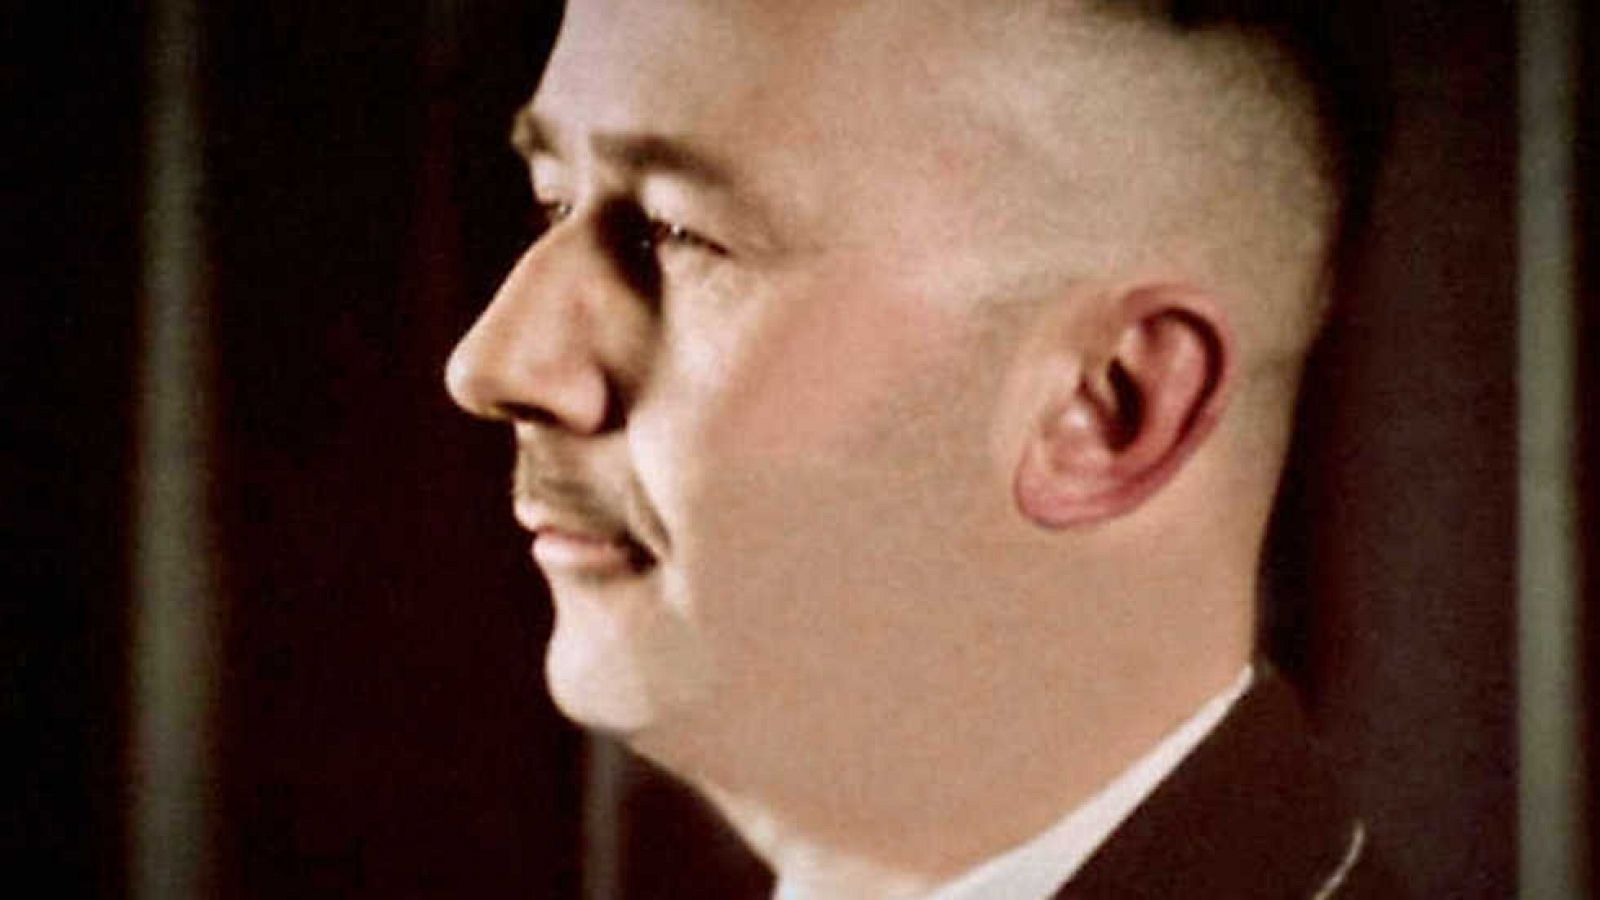 La noche temática - Heinrich Himmler: anatomía de un genocida - ver ahora